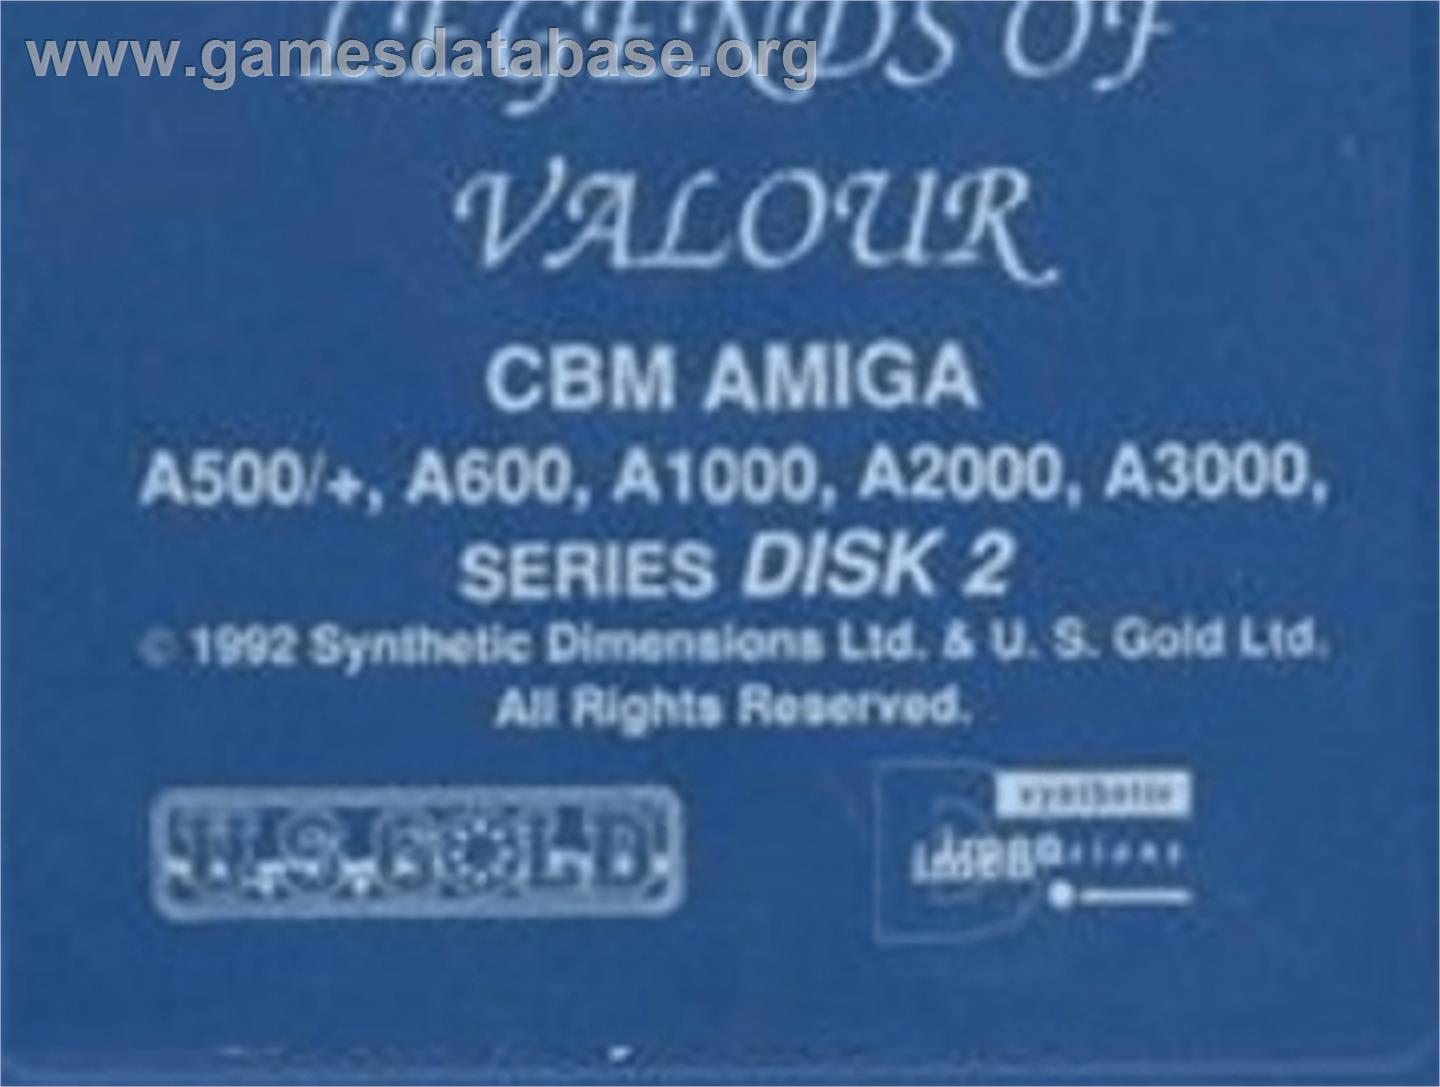 Legends of Valour - Commodore Amiga - Artwork - Cartridge Top